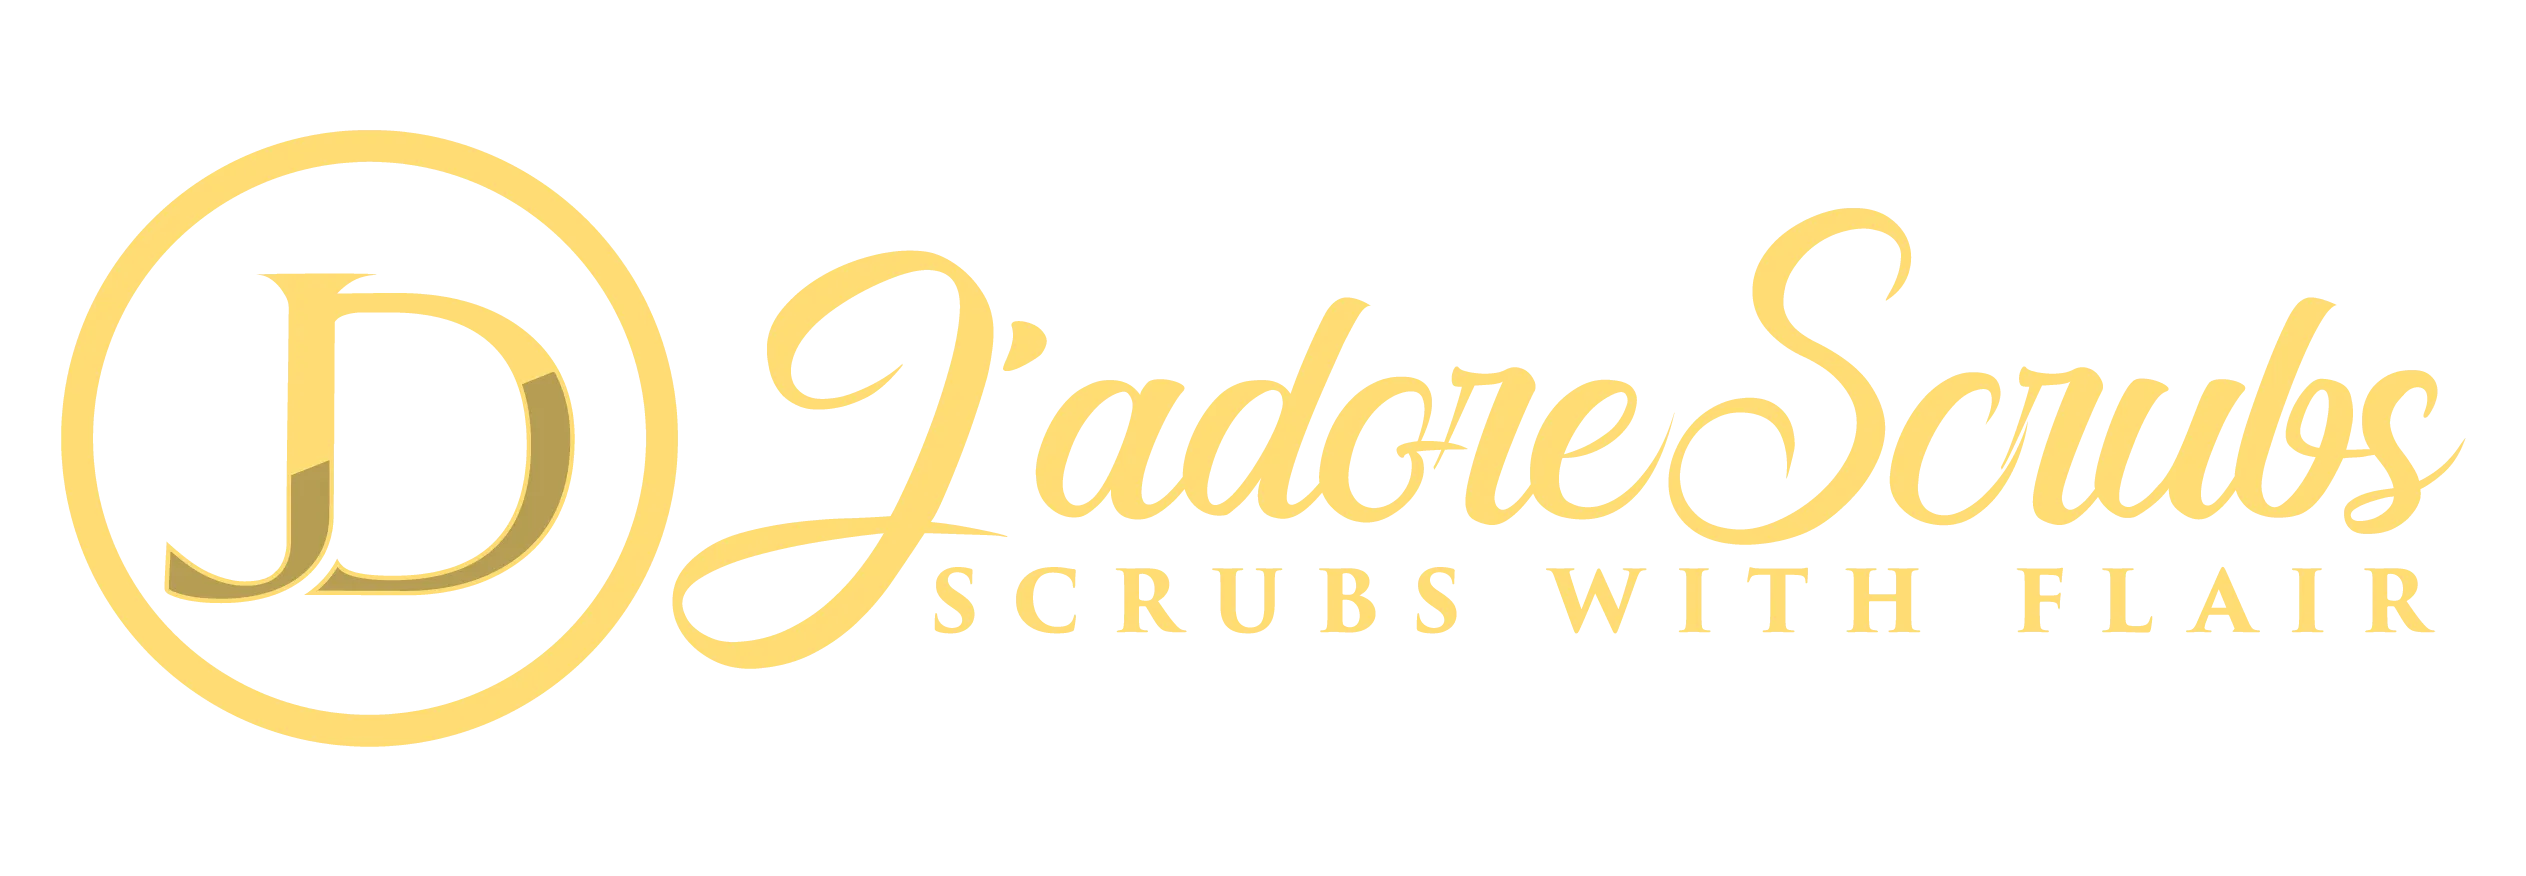 Jadore Scrubs